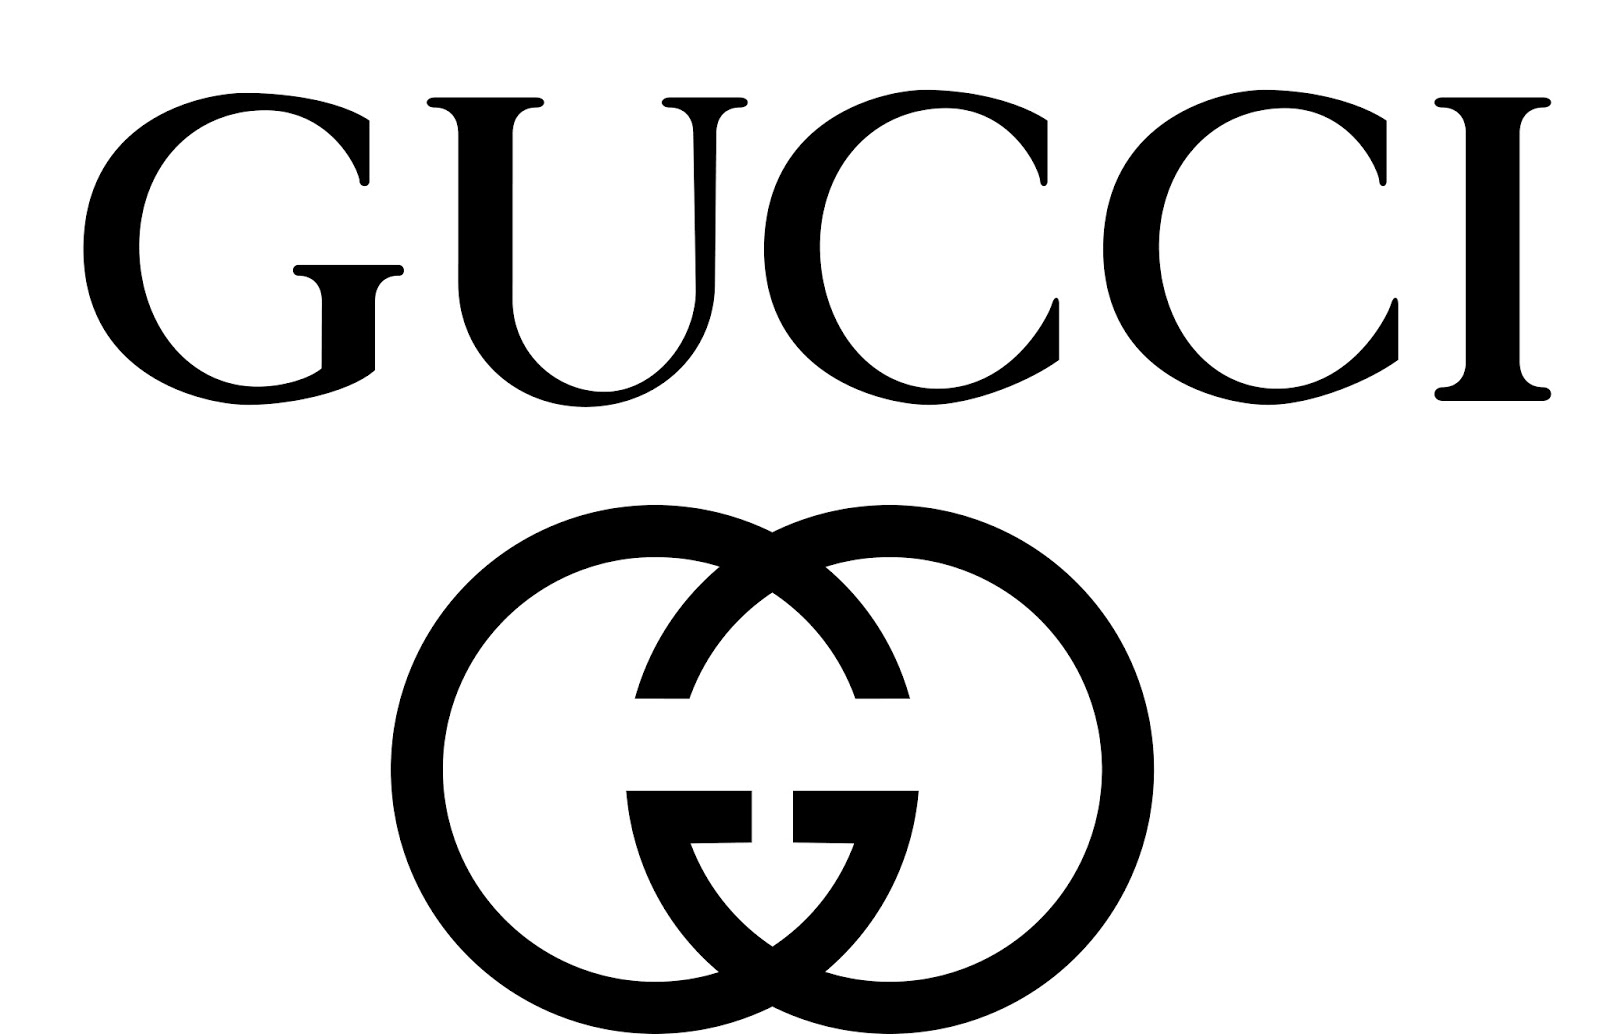 marcas más mundo: 5 de lujo - Guioteca